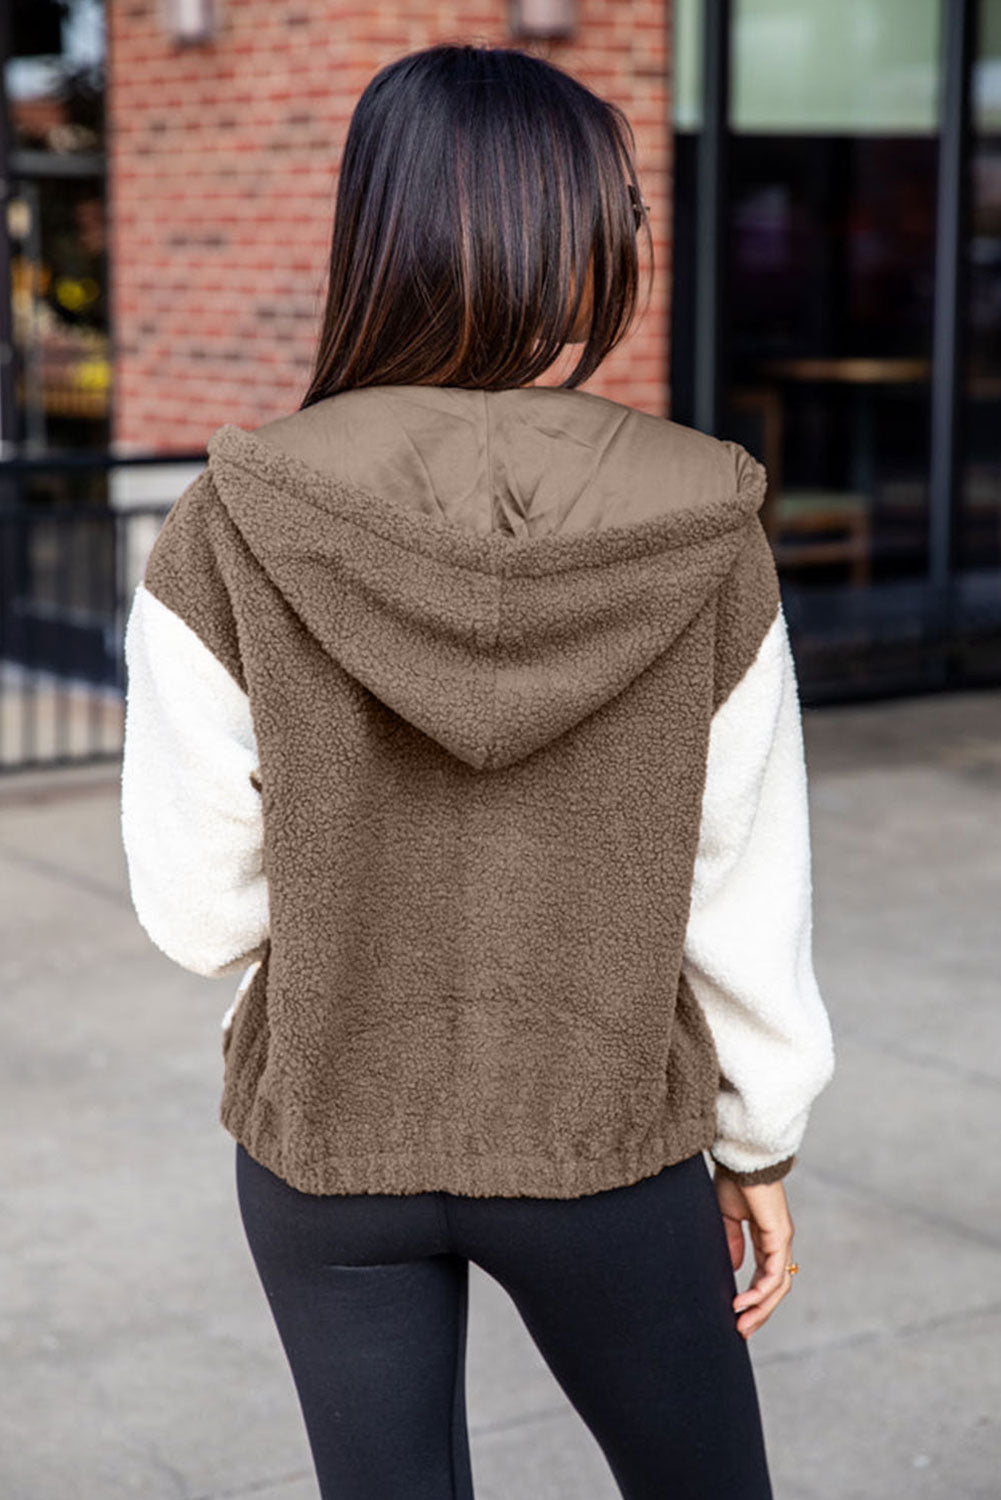 Braune Colorblock-Sherpa-Jacke mit Kapuze und Reißverschlusstaschen